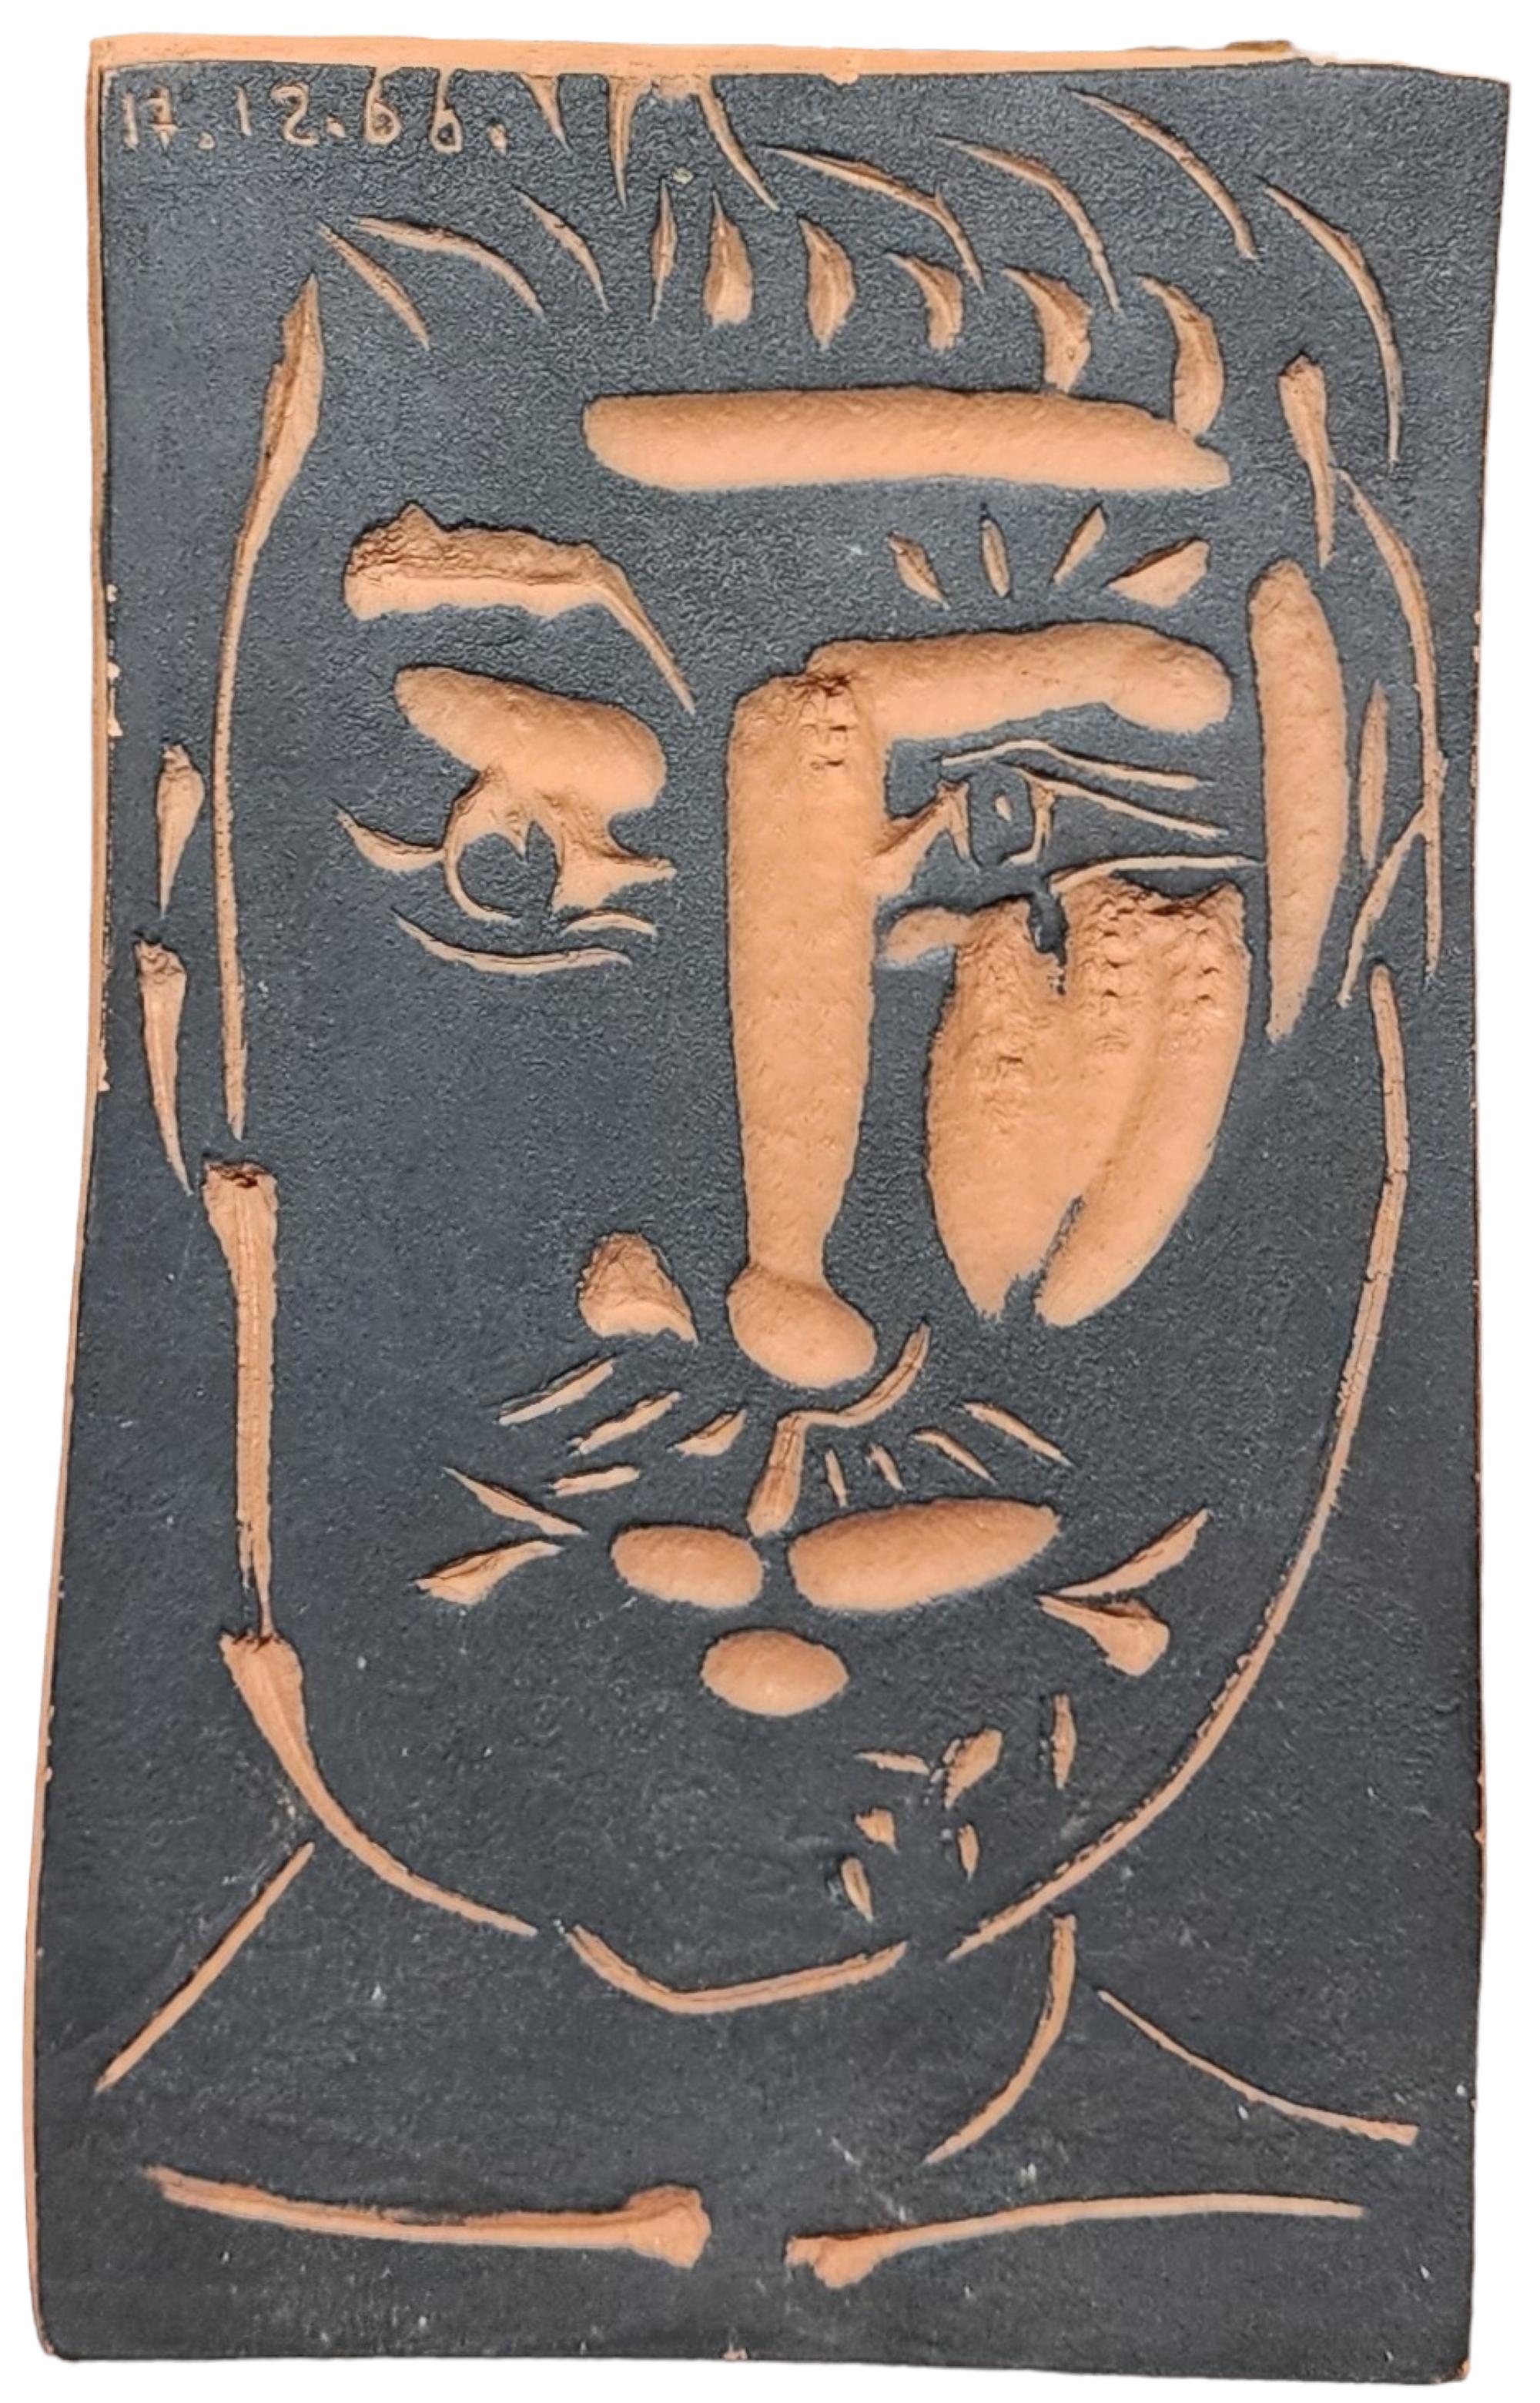 Pablo Picasso (1881-1973)

Visage d'homme, 1966

Plakette aus rotem Steingut

Nummeriert 129/500, mit Stempel "Empreinte Originale de Picasso" und "Madoura Plein Feu" auf der Unterseite.

6 1/4 x 3 7/8 x 7/8 Zoll (15,9 x 9,7 x 2,2 cm)

Ramié 539